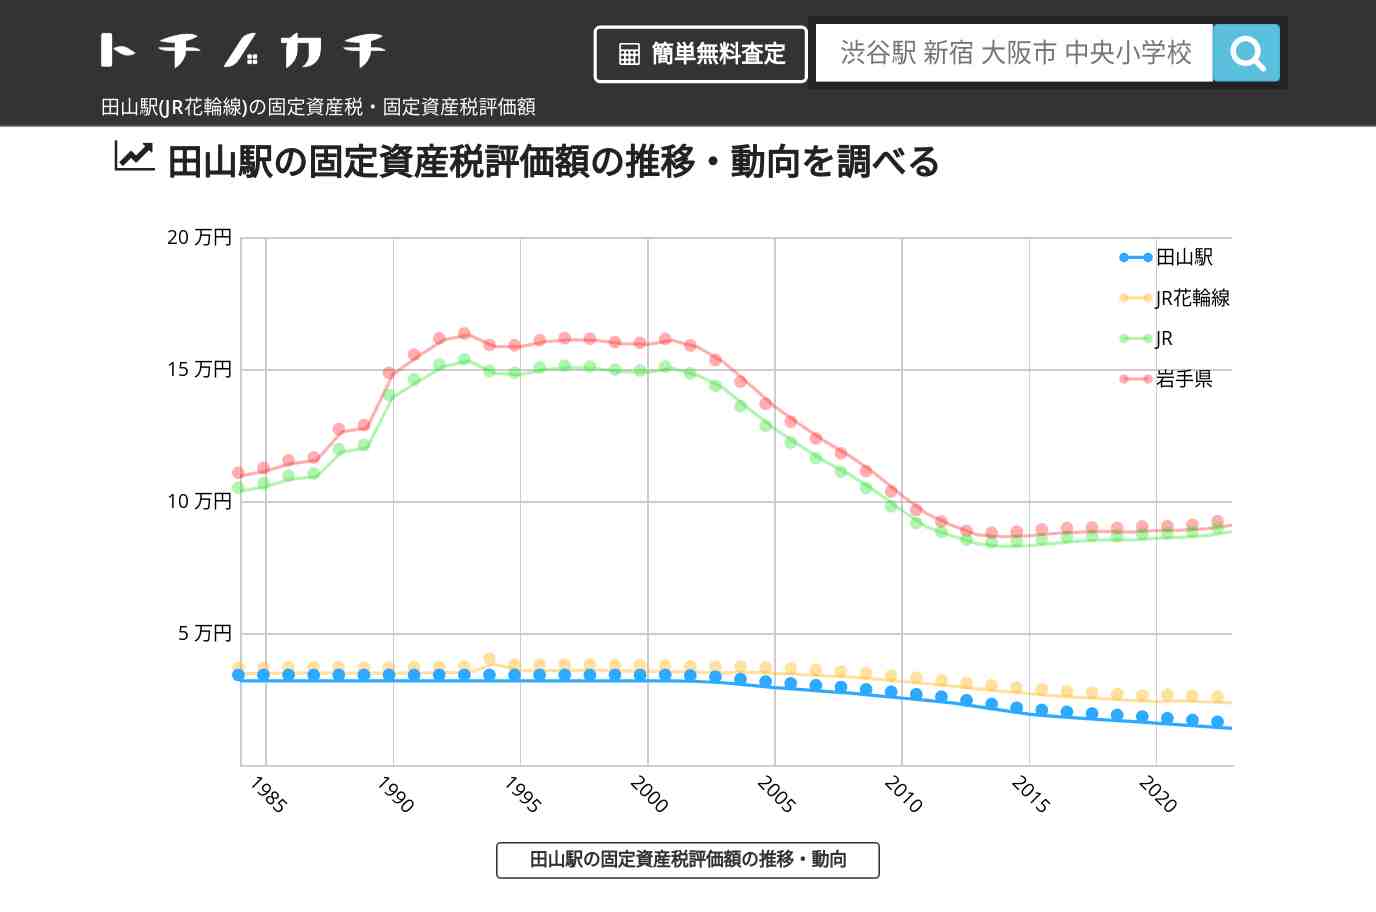 田山駅(JR花輪線)の固定資産税・固定資産税評価額 | トチノカチ